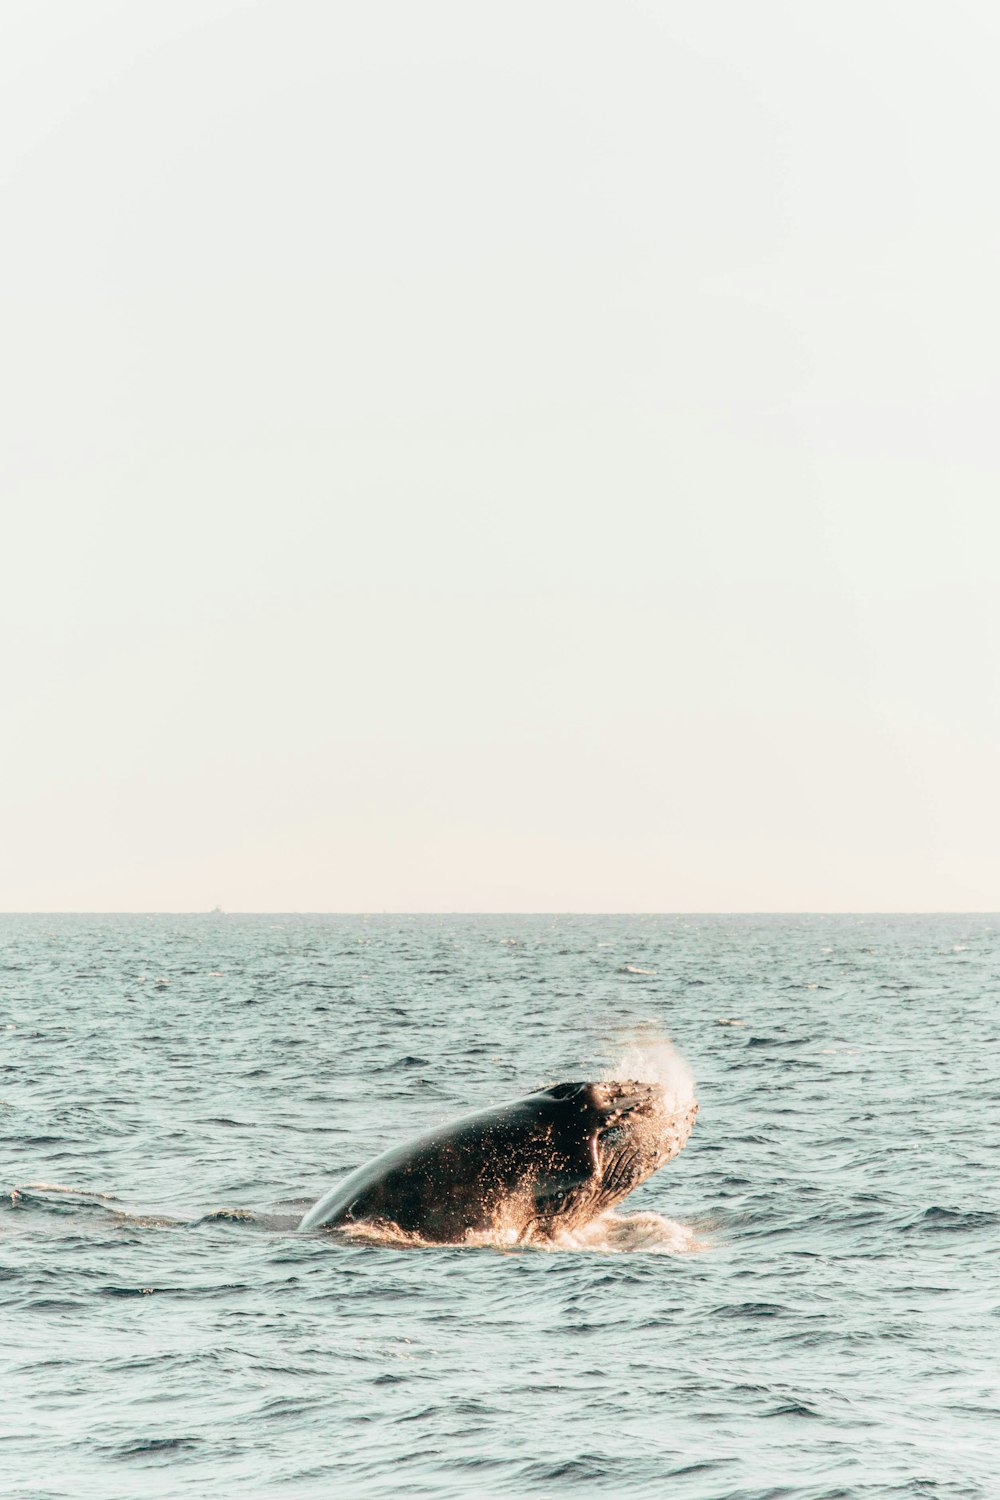 Uma baleia jubarte mergulha no oceano